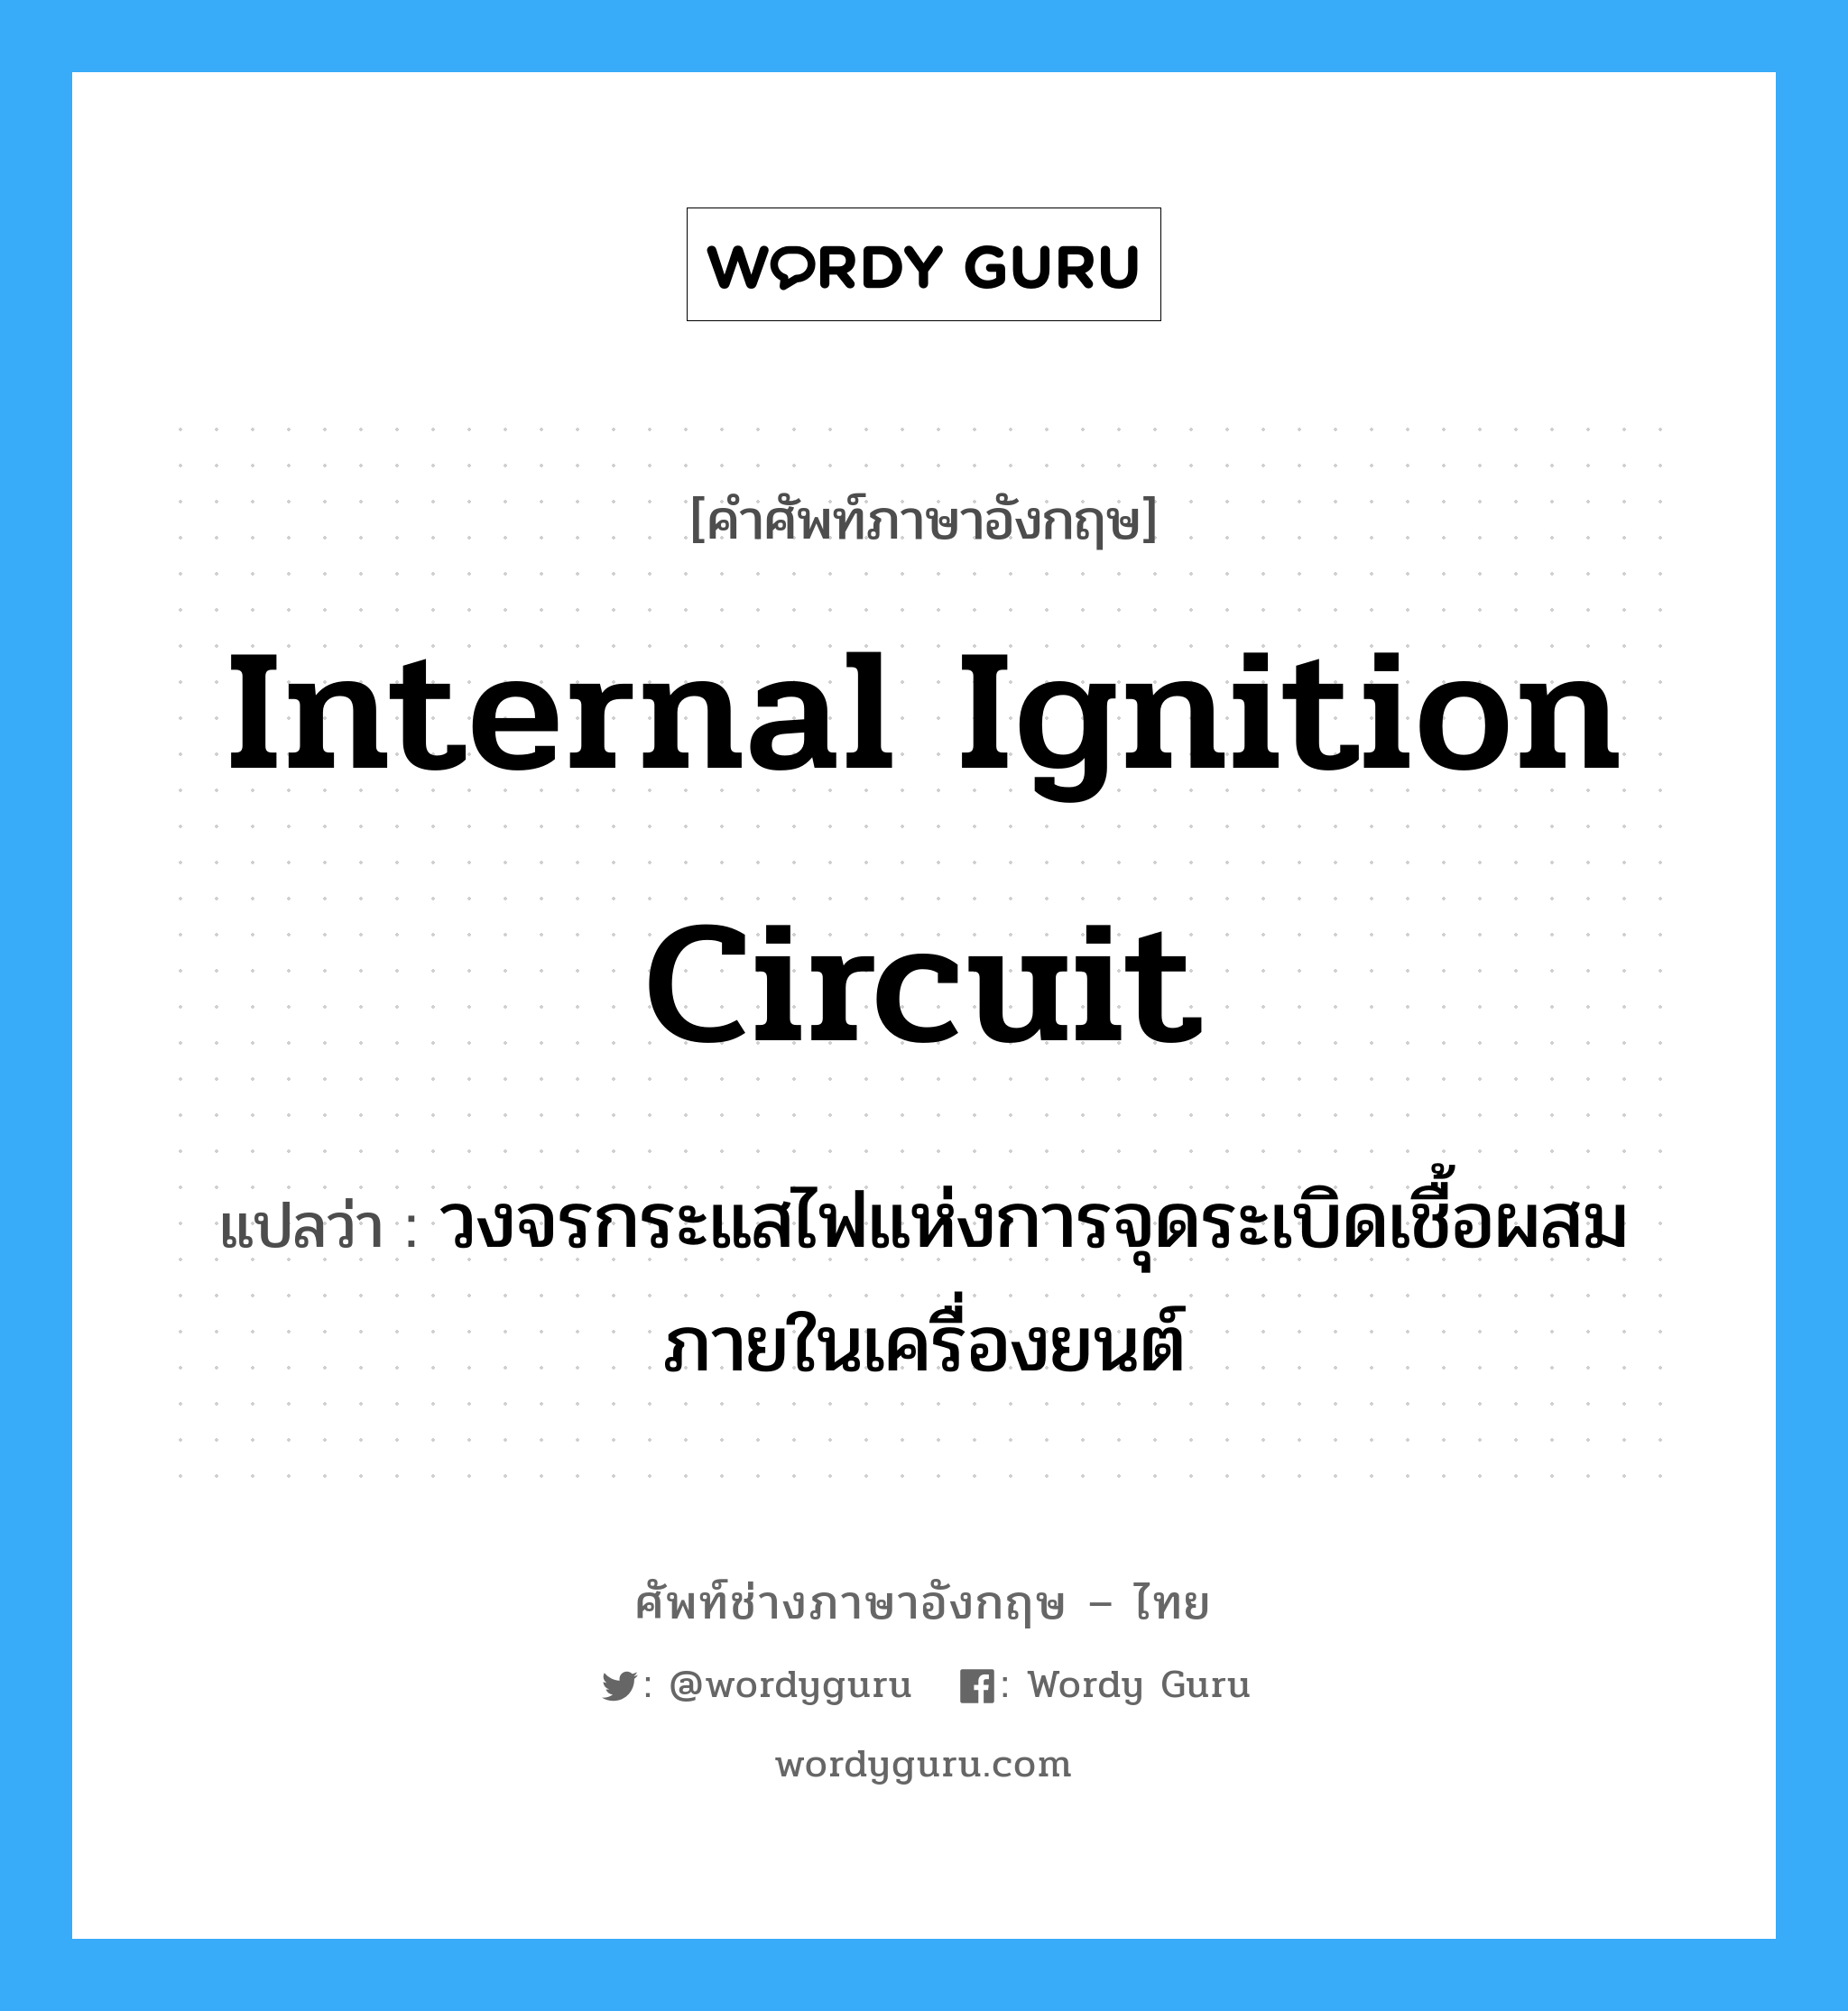 internal ignition circuit แปลว่า?, คำศัพท์ช่างภาษาอังกฤษ - ไทย internal ignition circuit คำศัพท์ภาษาอังกฤษ internal ignition circuit แปลว่า วงจรกระแสไฟแห่งการจุดระเบิดเชื้อผสมภายในเครื่องยนต์